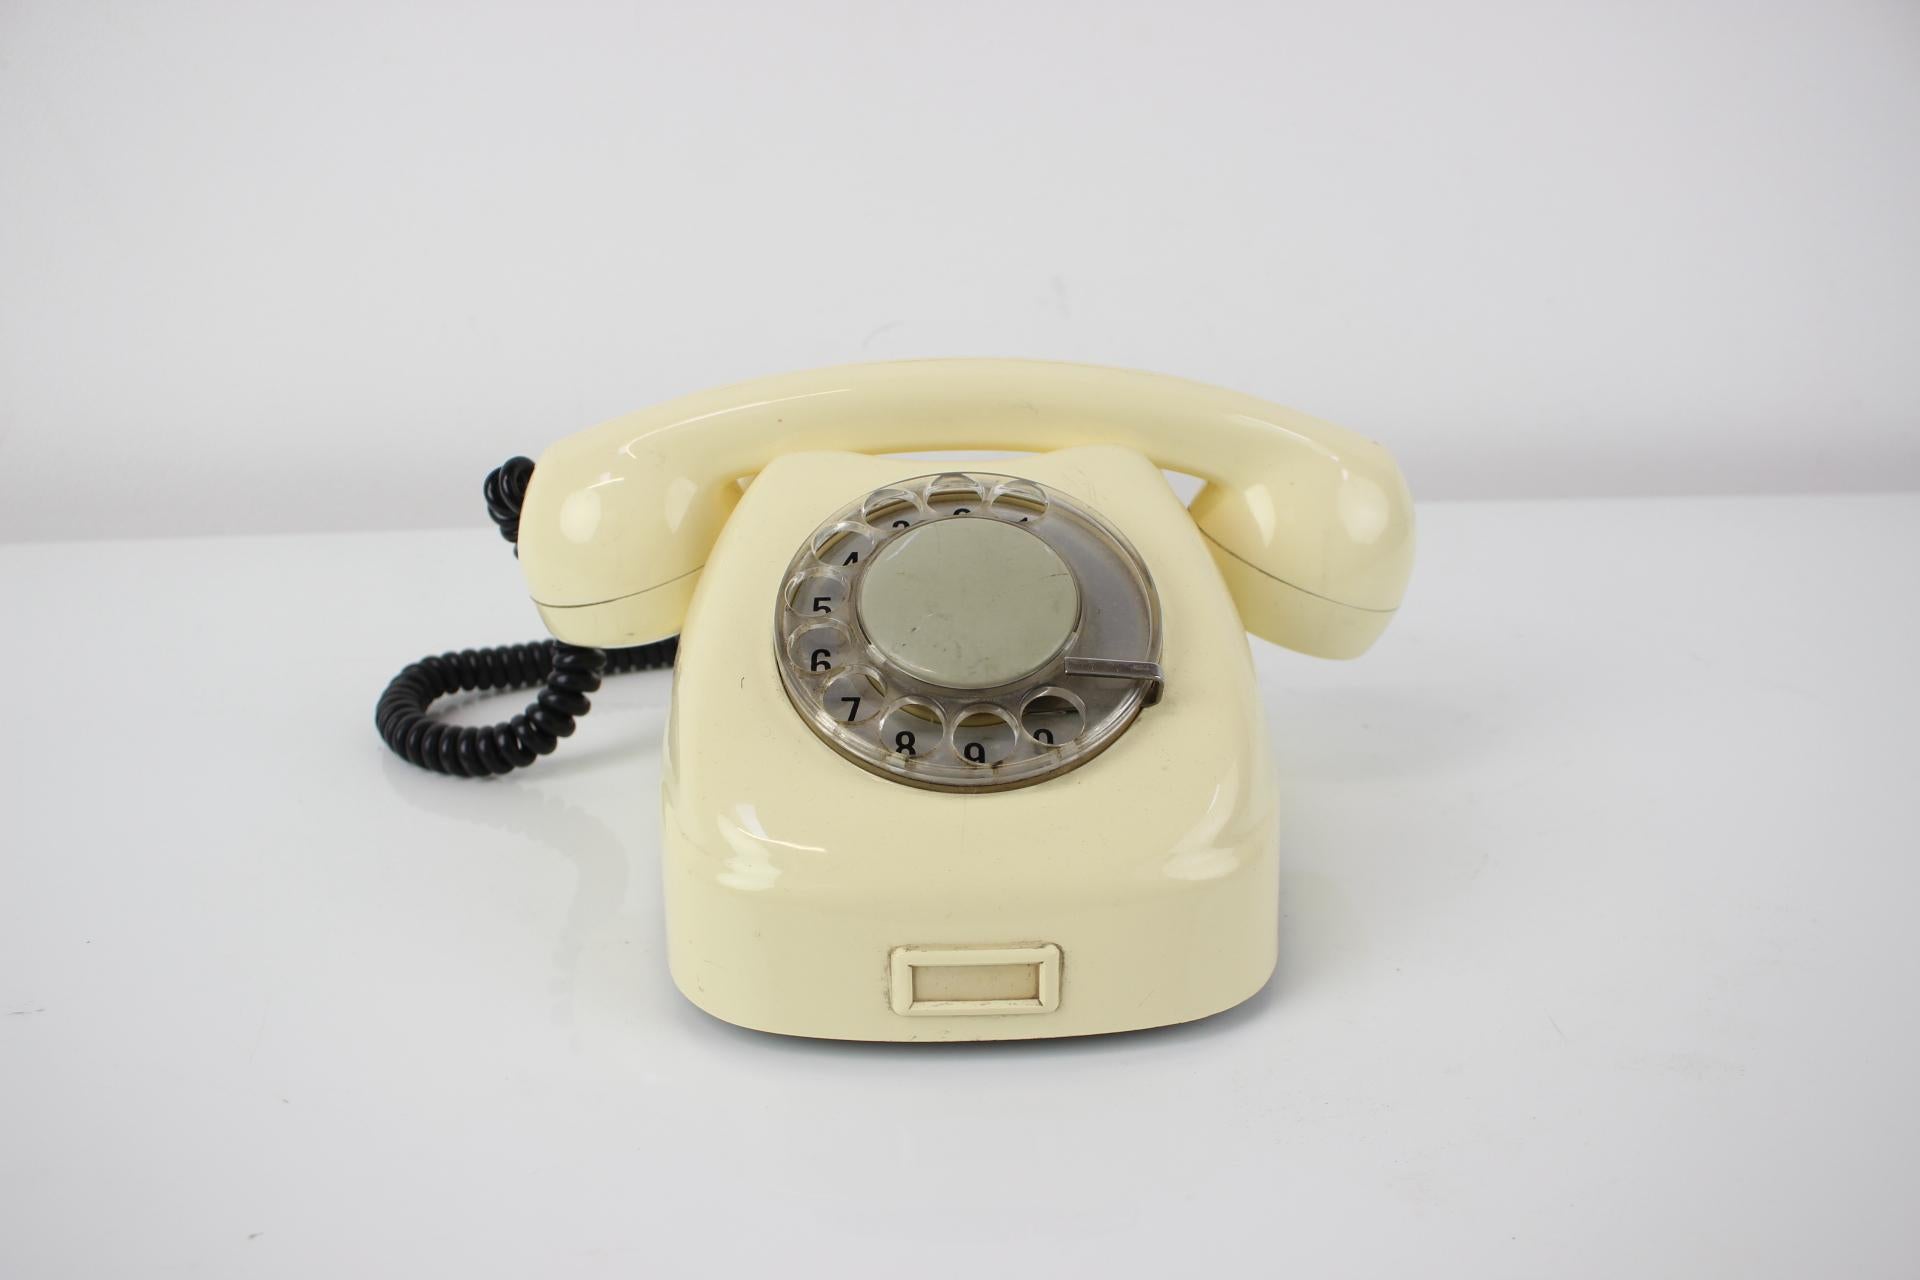 1968 phones